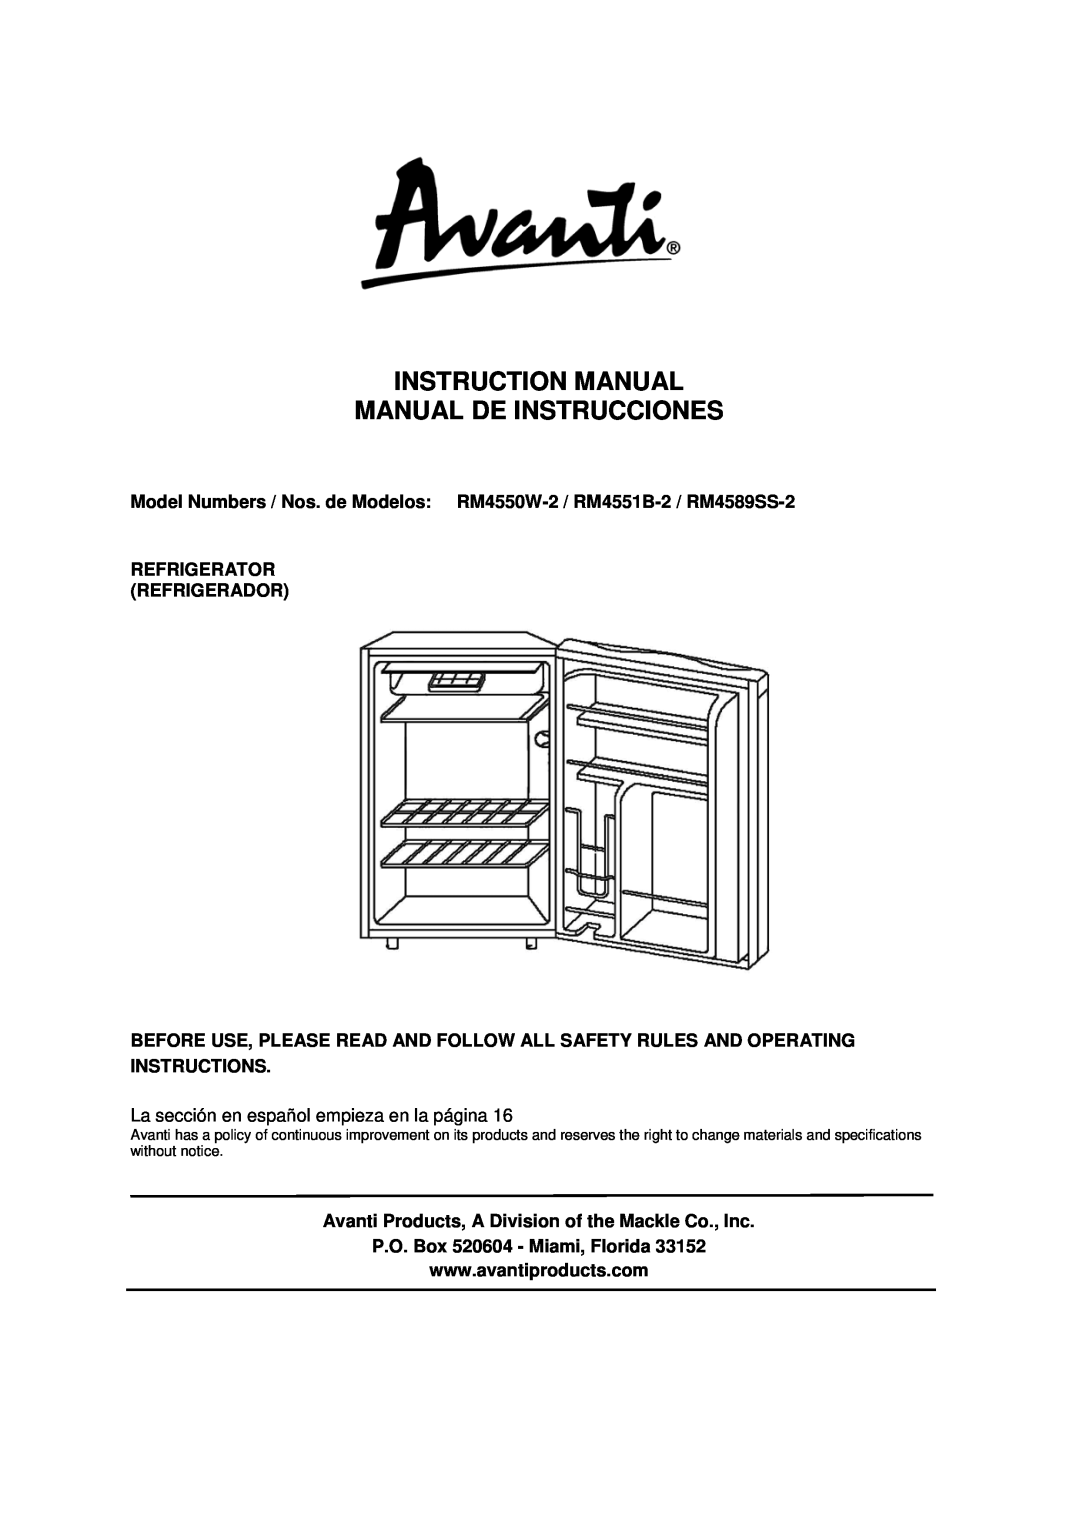 Avanti RM4550W-2, RM4551B-2 instruction manual Refrigerator Refrigerador, P.O. Box 520604 - Miami, Florida 